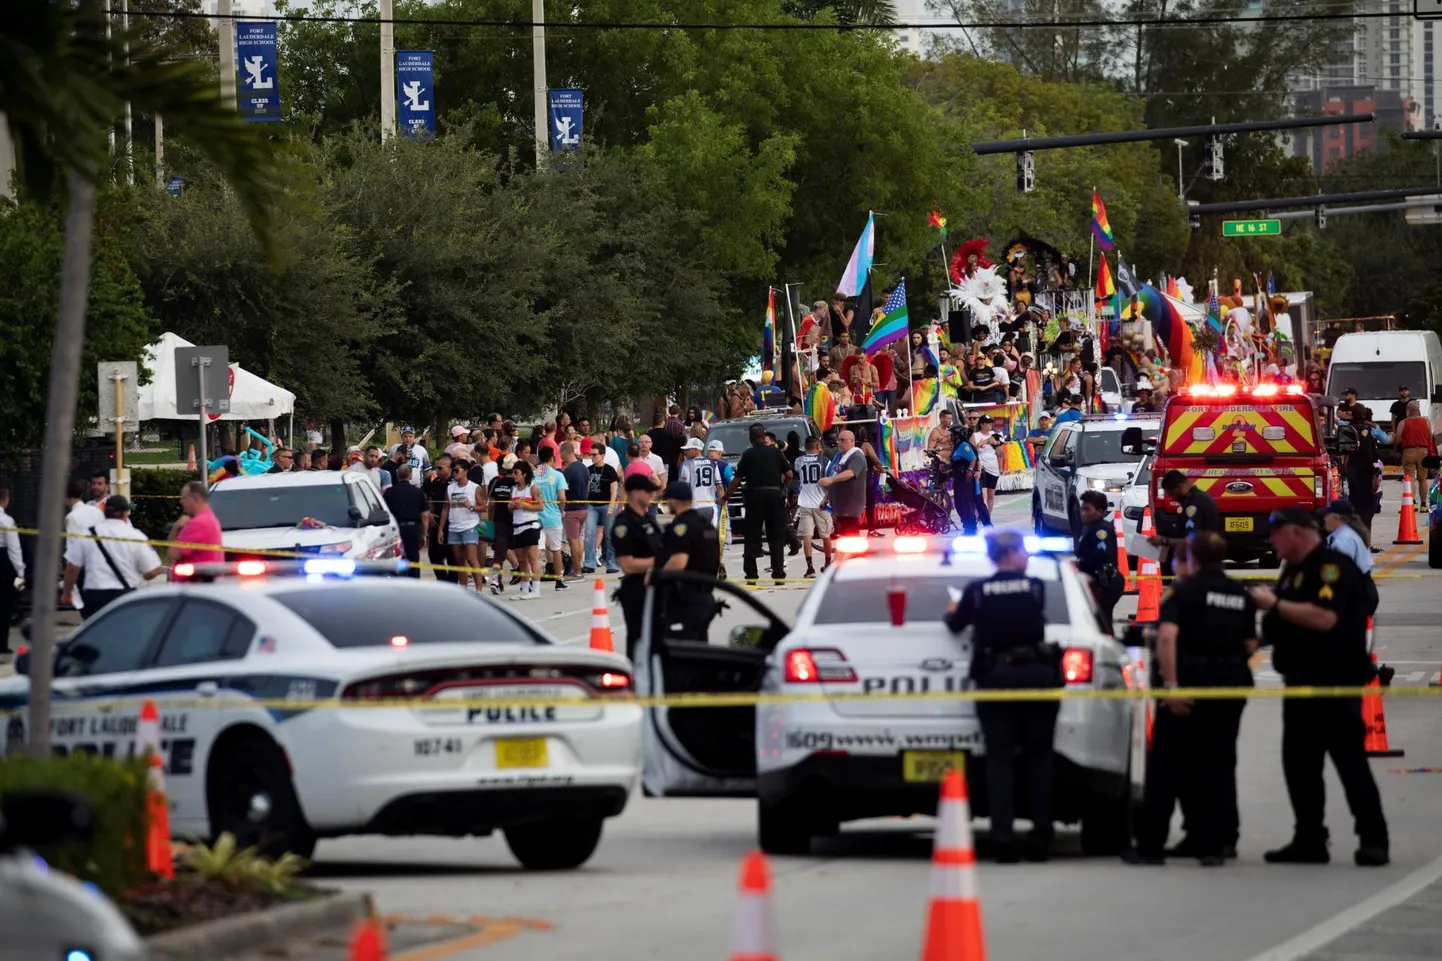 Floridas Wilton Manorsis sai laupäeval seksuaalvähemuste marsil üks inimene surma, kui auto rahva sekka sõitis.